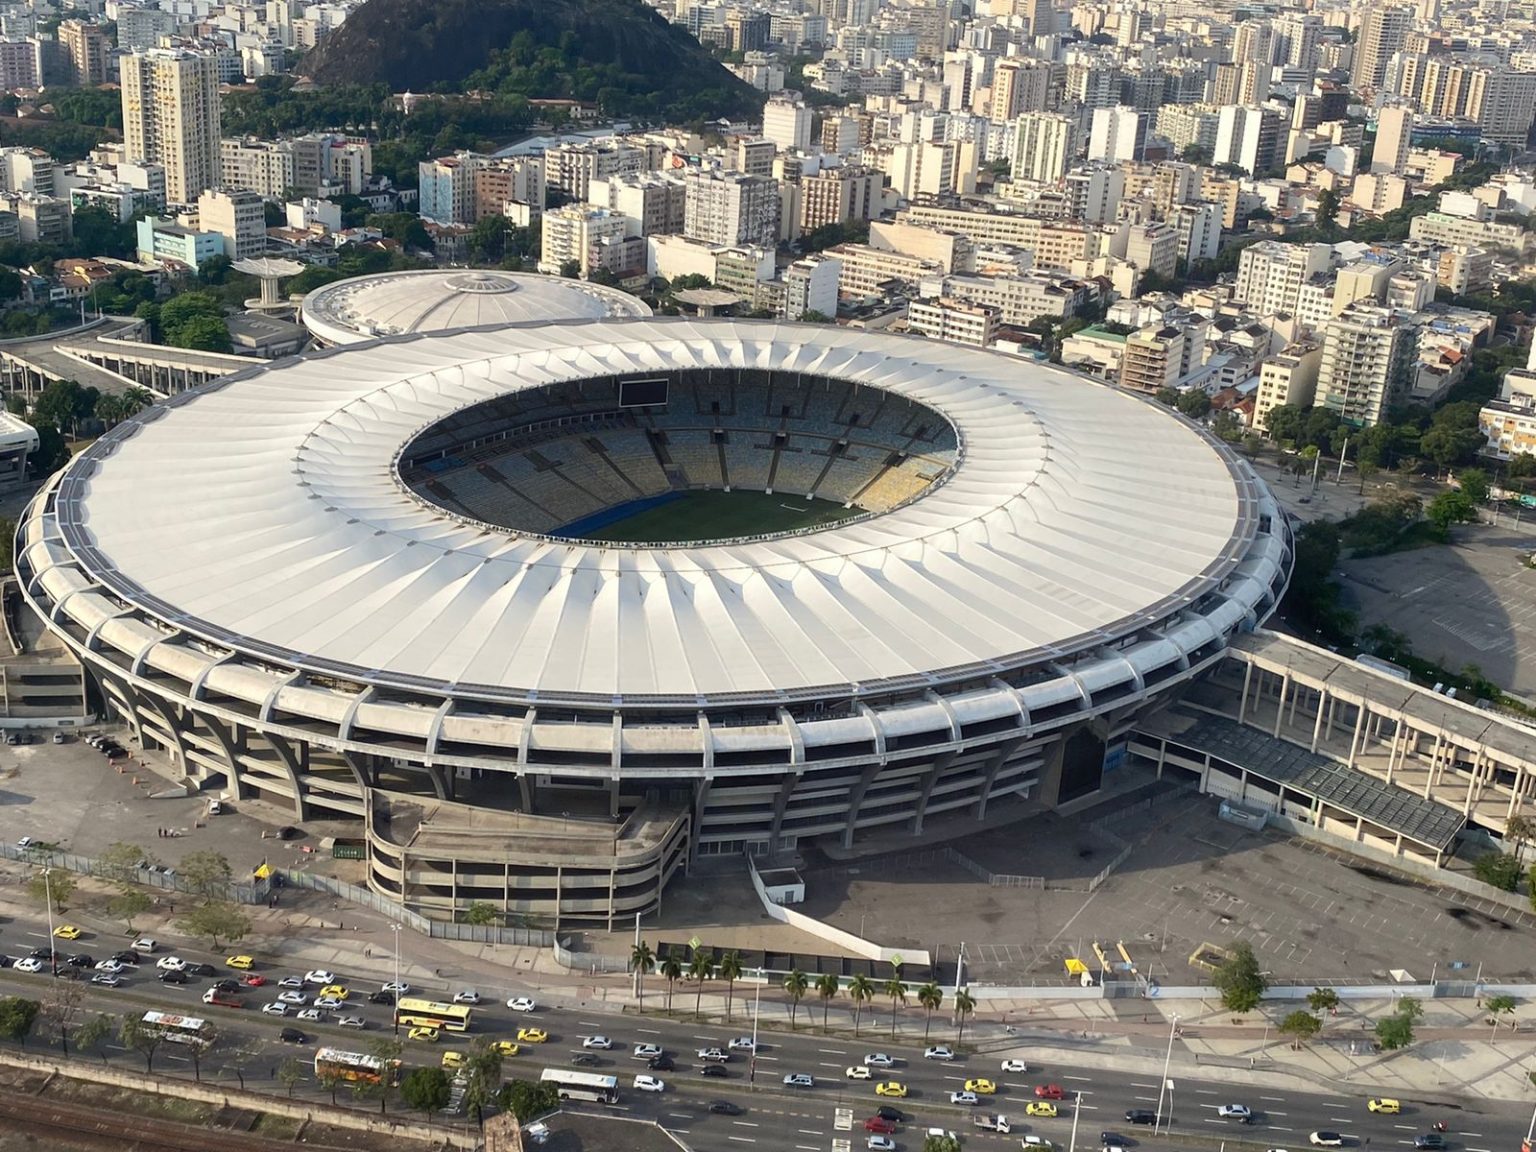 Imagem do Estádio Nolton Santos no Maracanã